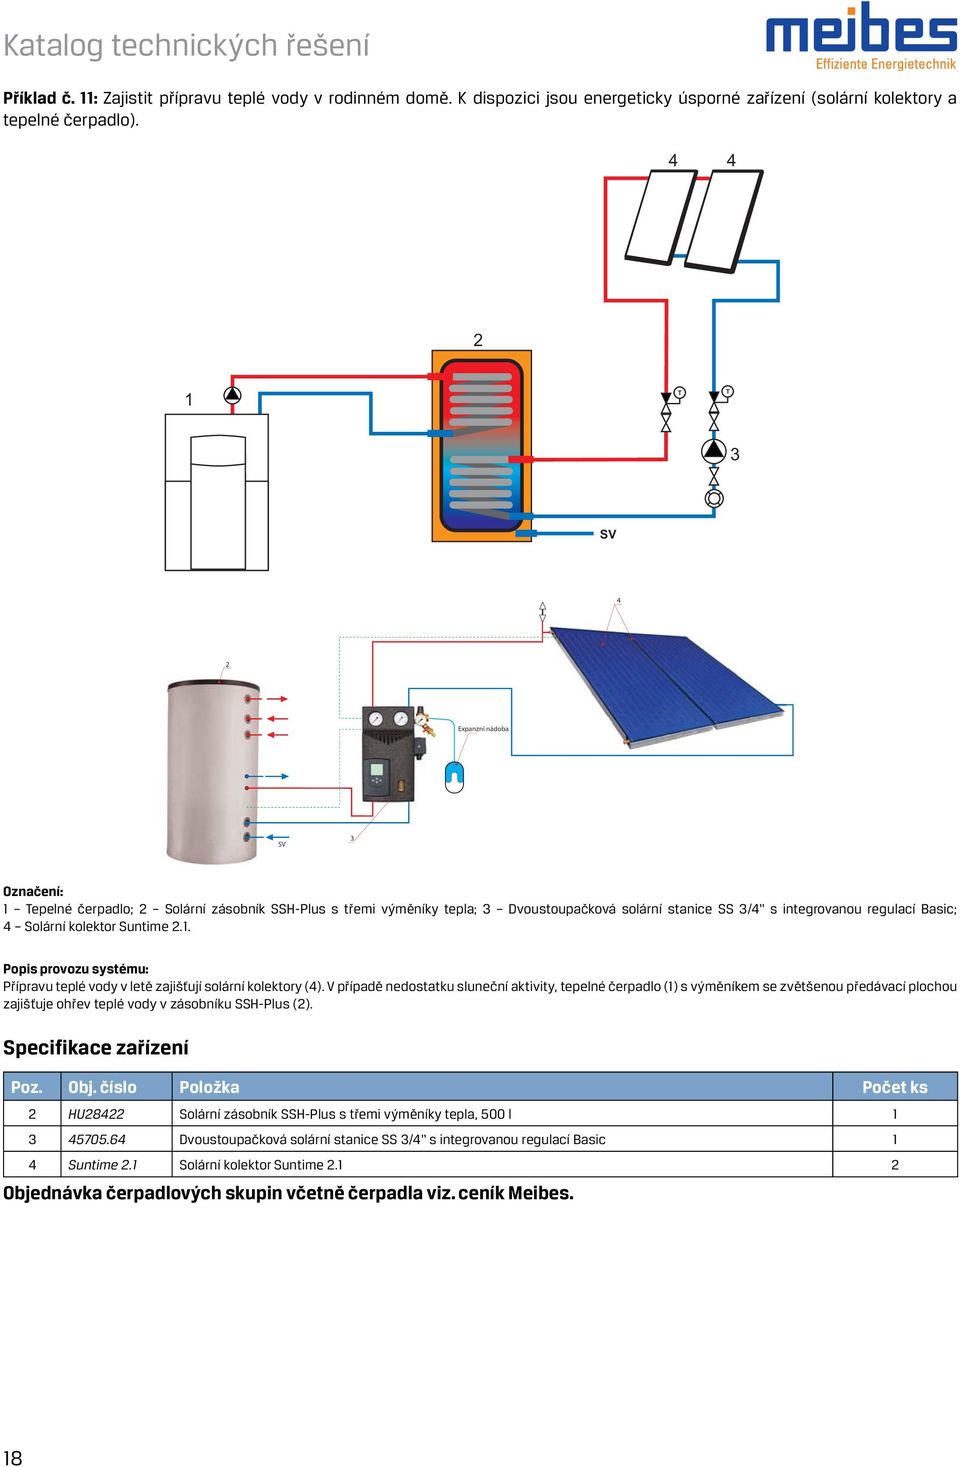 V případě nedostatku sluneční aktivity, tepelné čerpadlo (1) s výměníkem se zvětšenou předávací plochou zajišťuje ohřev teplé vody v zásobníku SSH-Plus ().